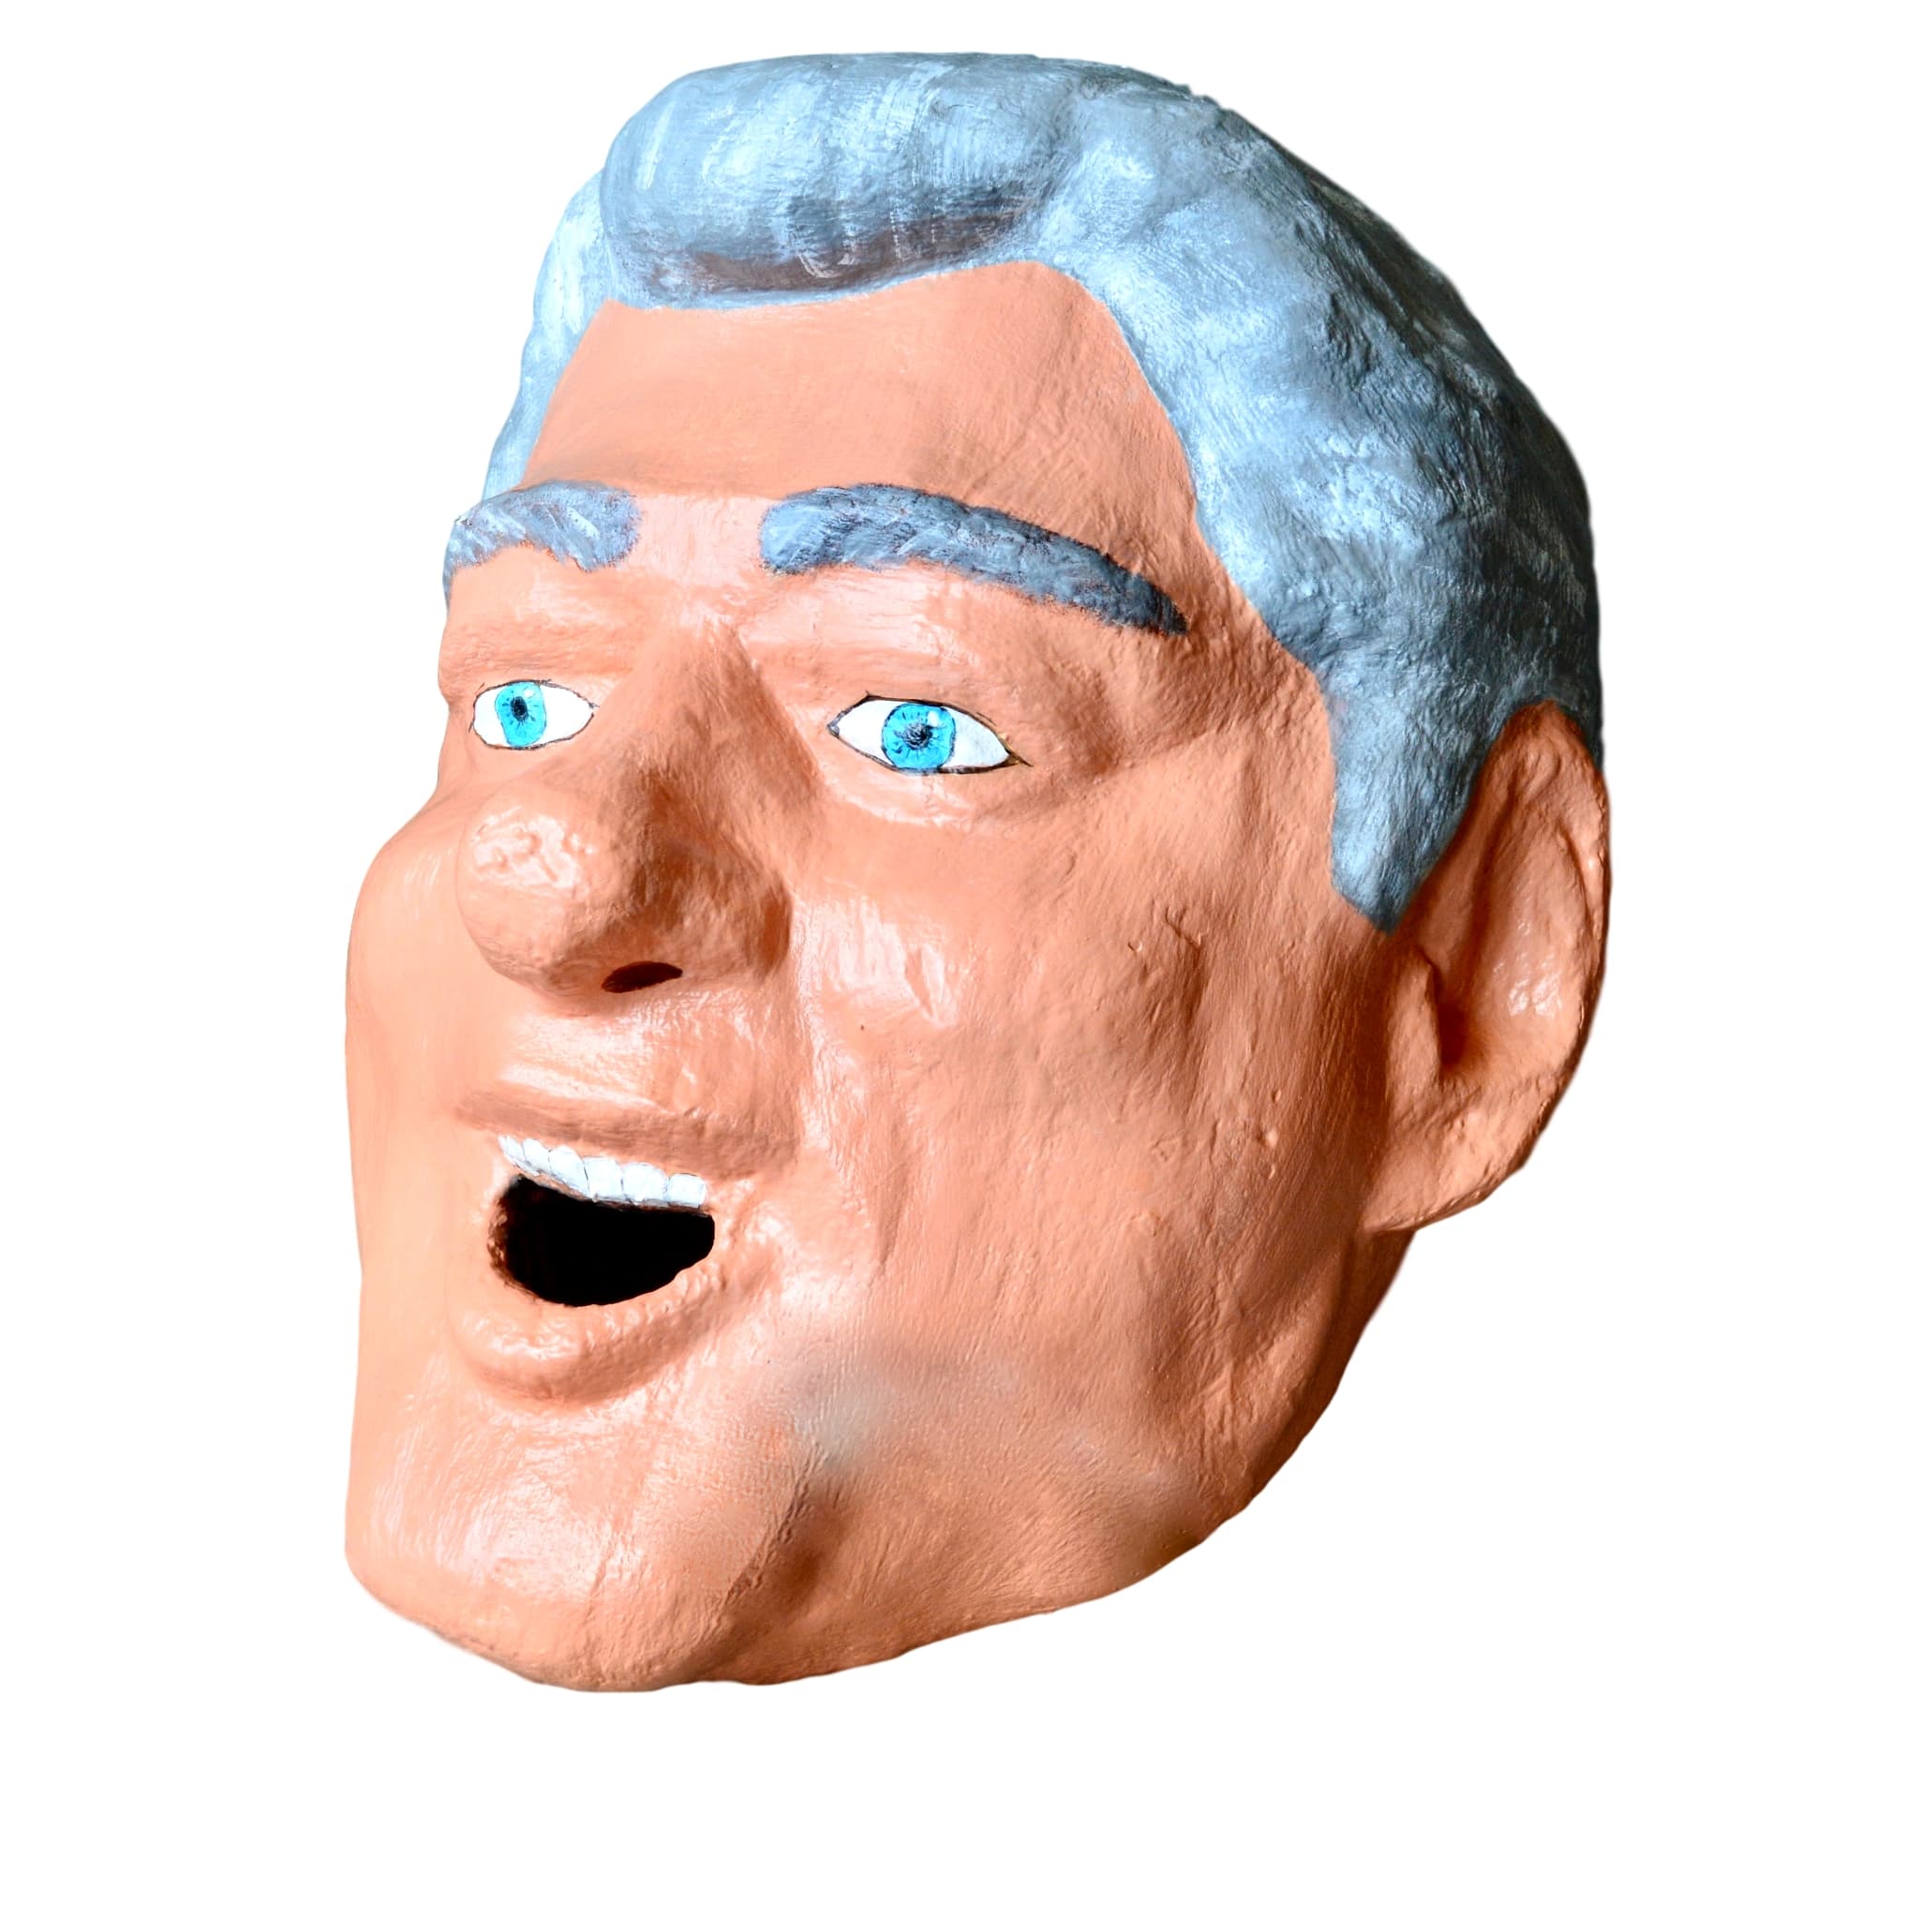 Monumental Bill Clinton Sculptural Head